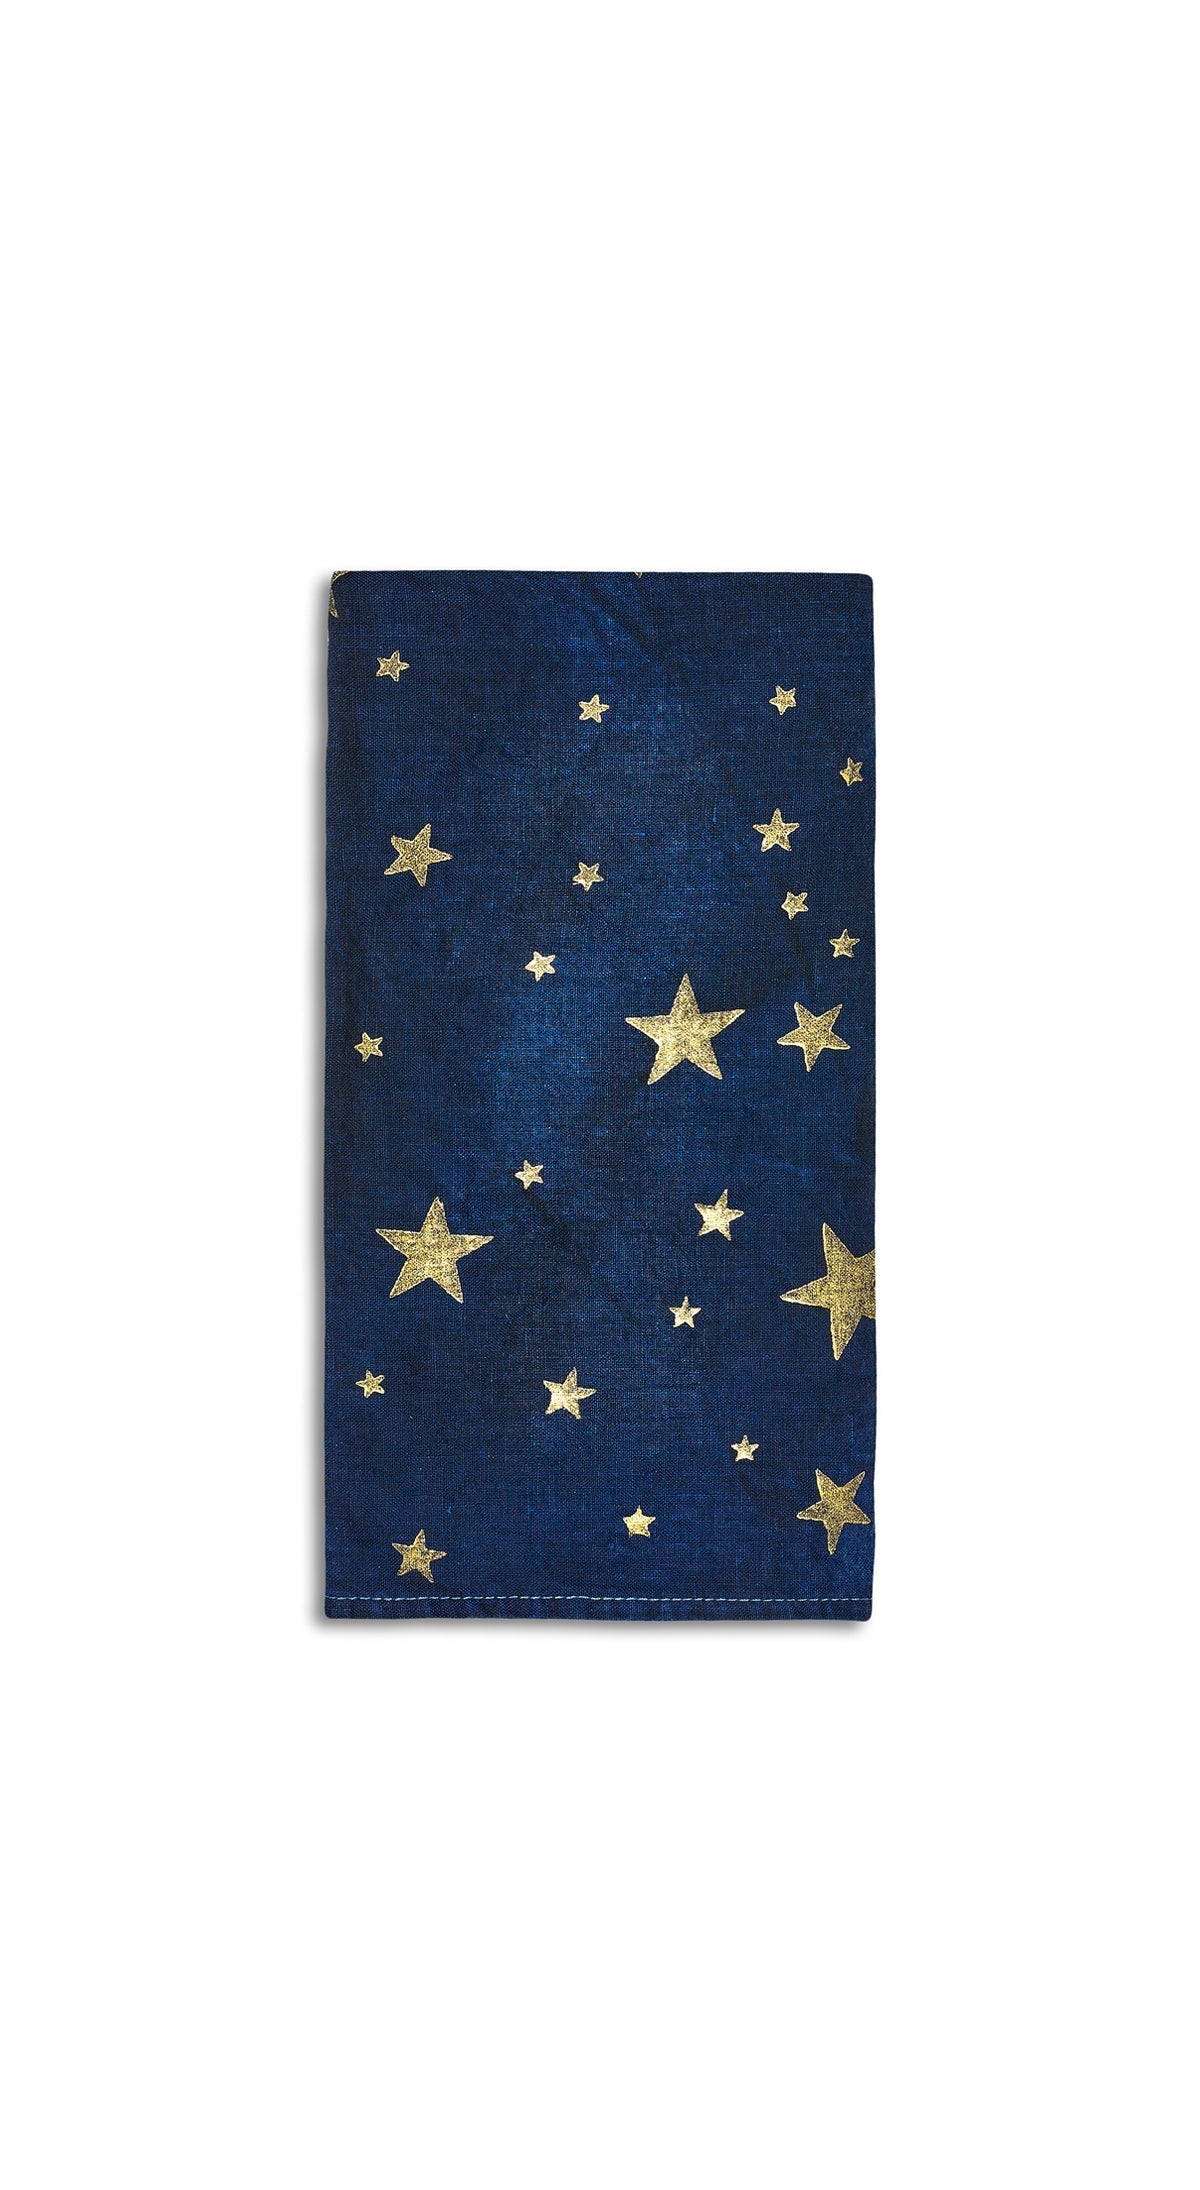 Falling Stars Linen Napkin in Ink Blue, 50x50cm